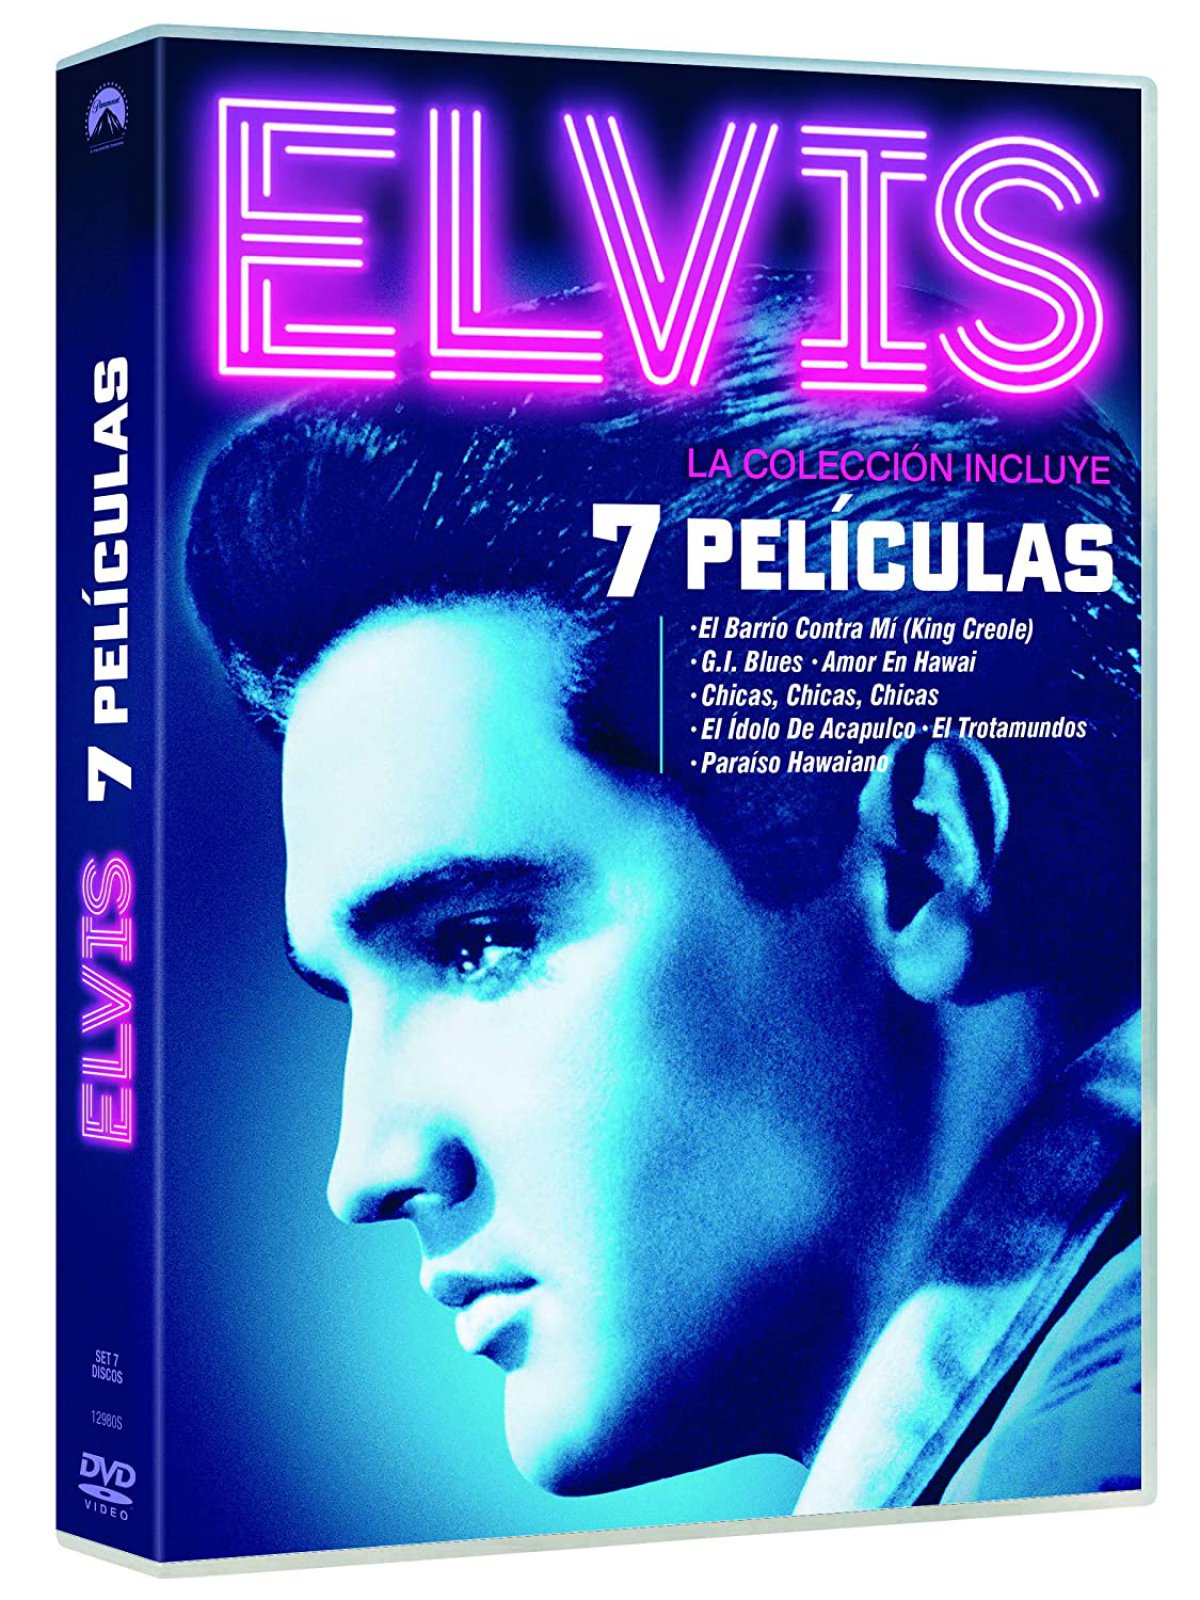 Imagen promocional con el rostro de Elvis Presley